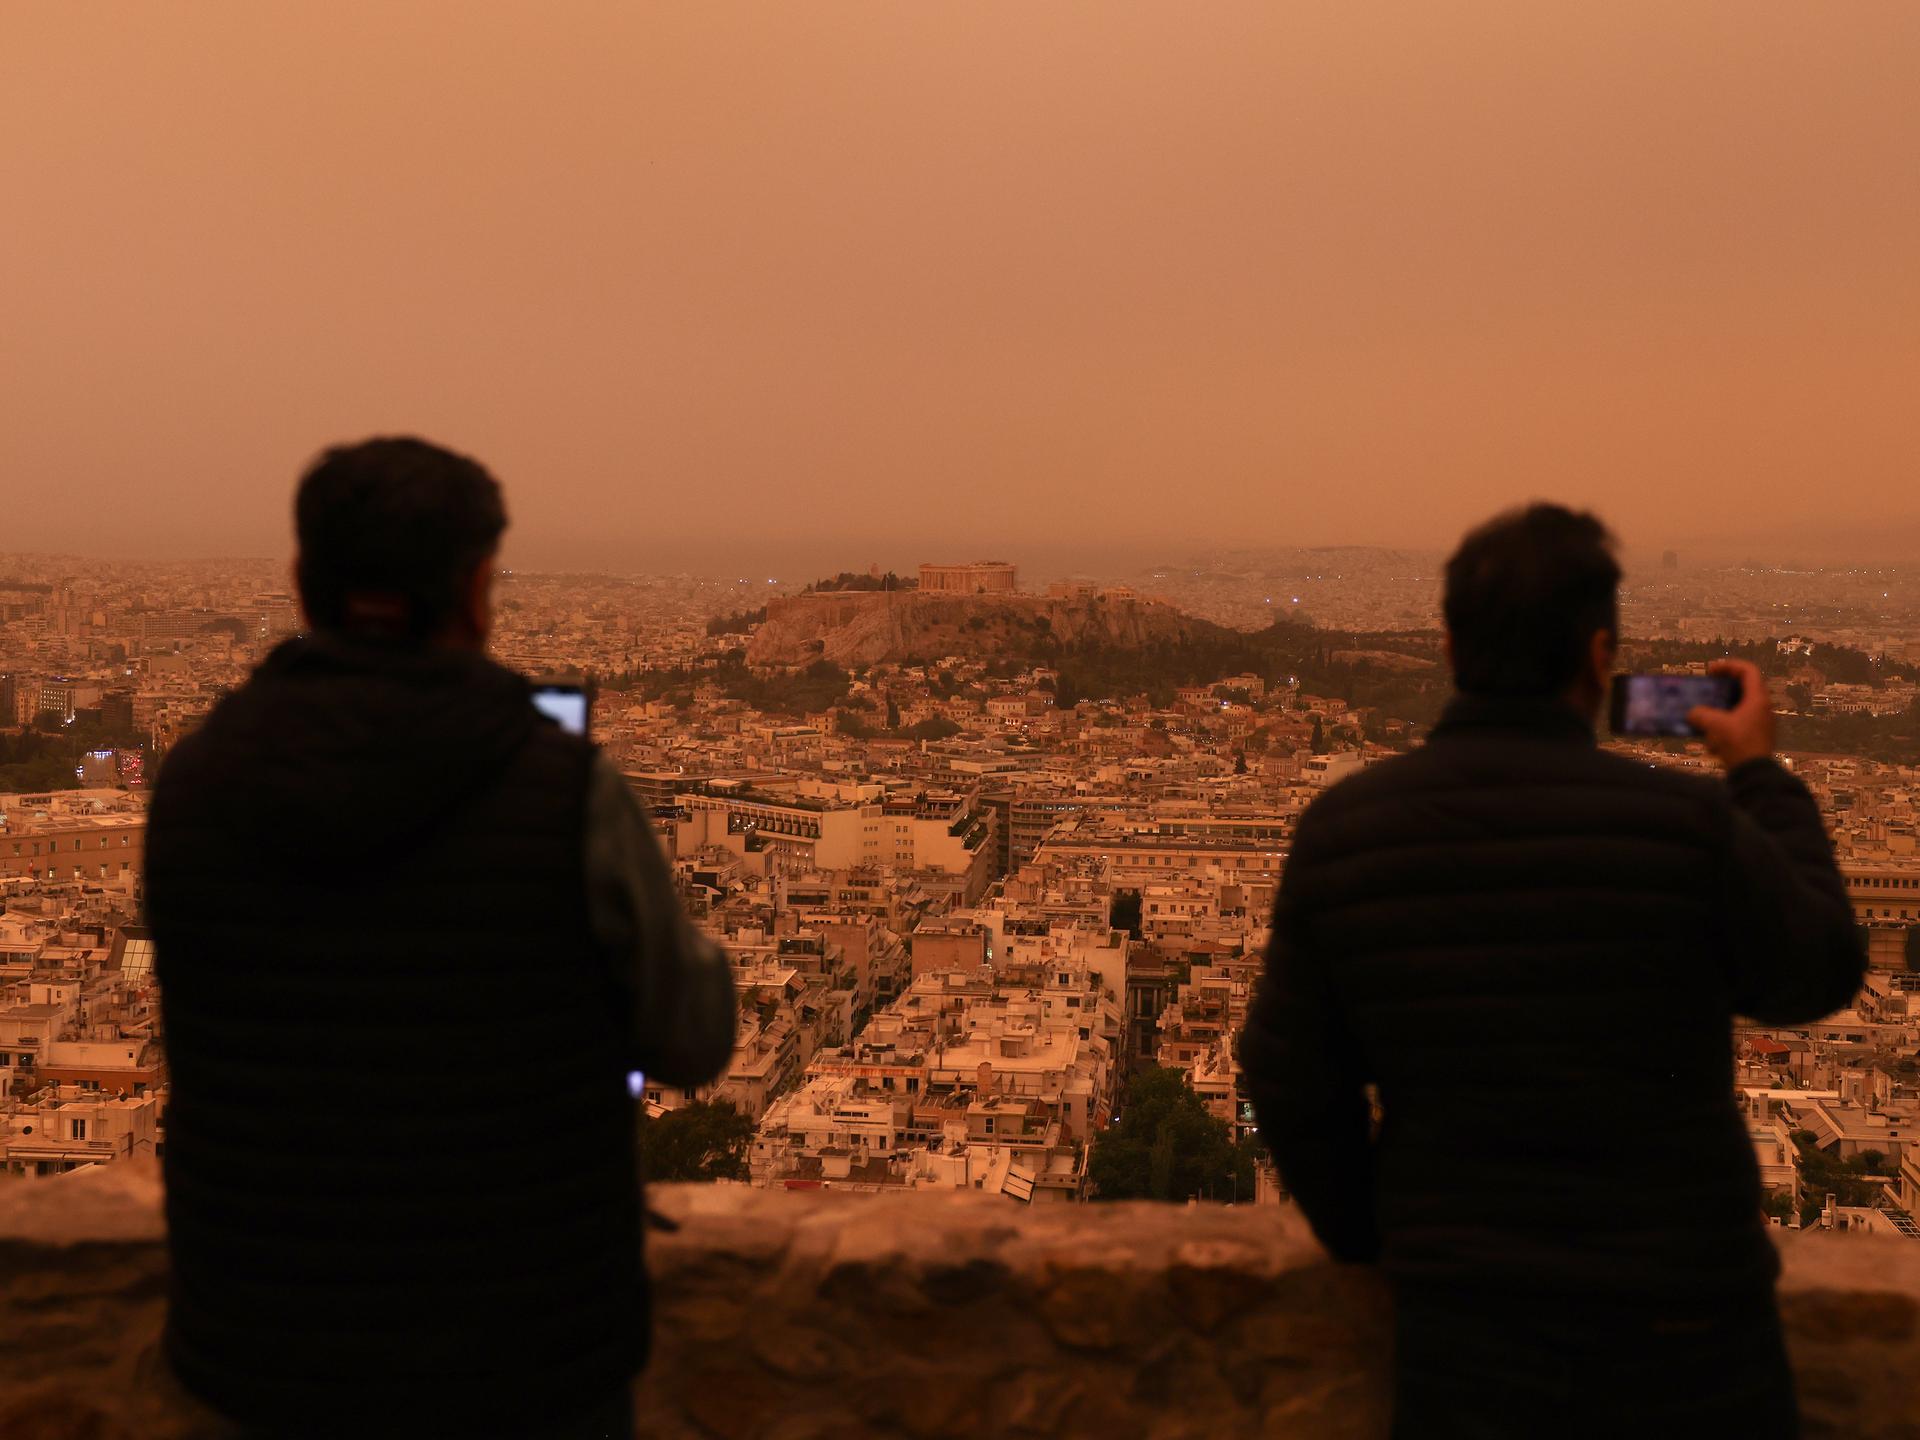 Staub aus der Wüstse hat sich über die griechische Hauptstadt Athen gelegt. Zwei Menschen sitzen auf einer Anhöhe und blicken auf die Stadt, die rot-gelblisch schimmert.